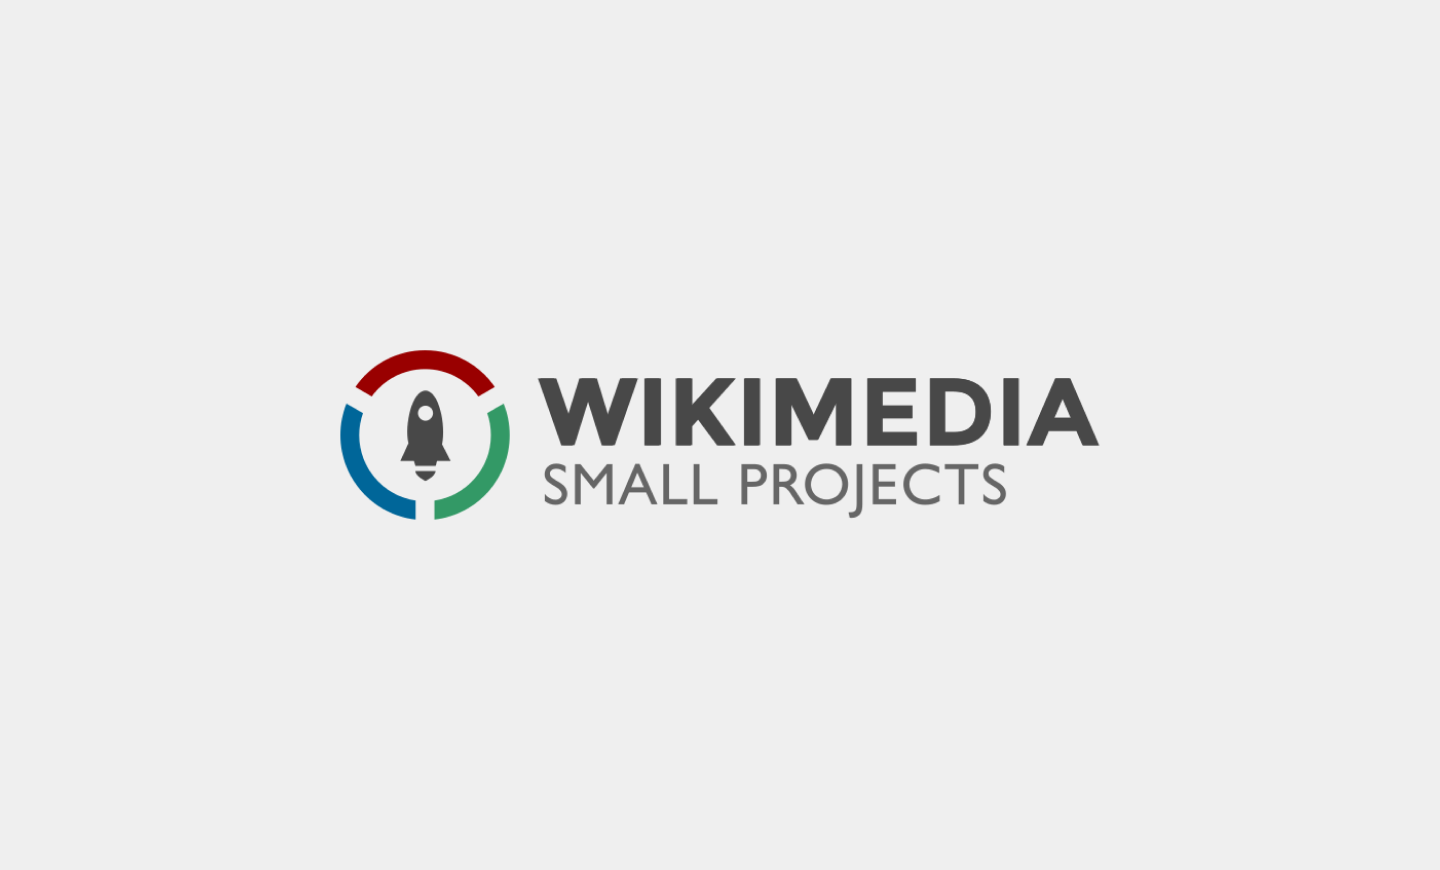 Entrevista a Galahad, Coordinador General de Wikimedia Small Projects